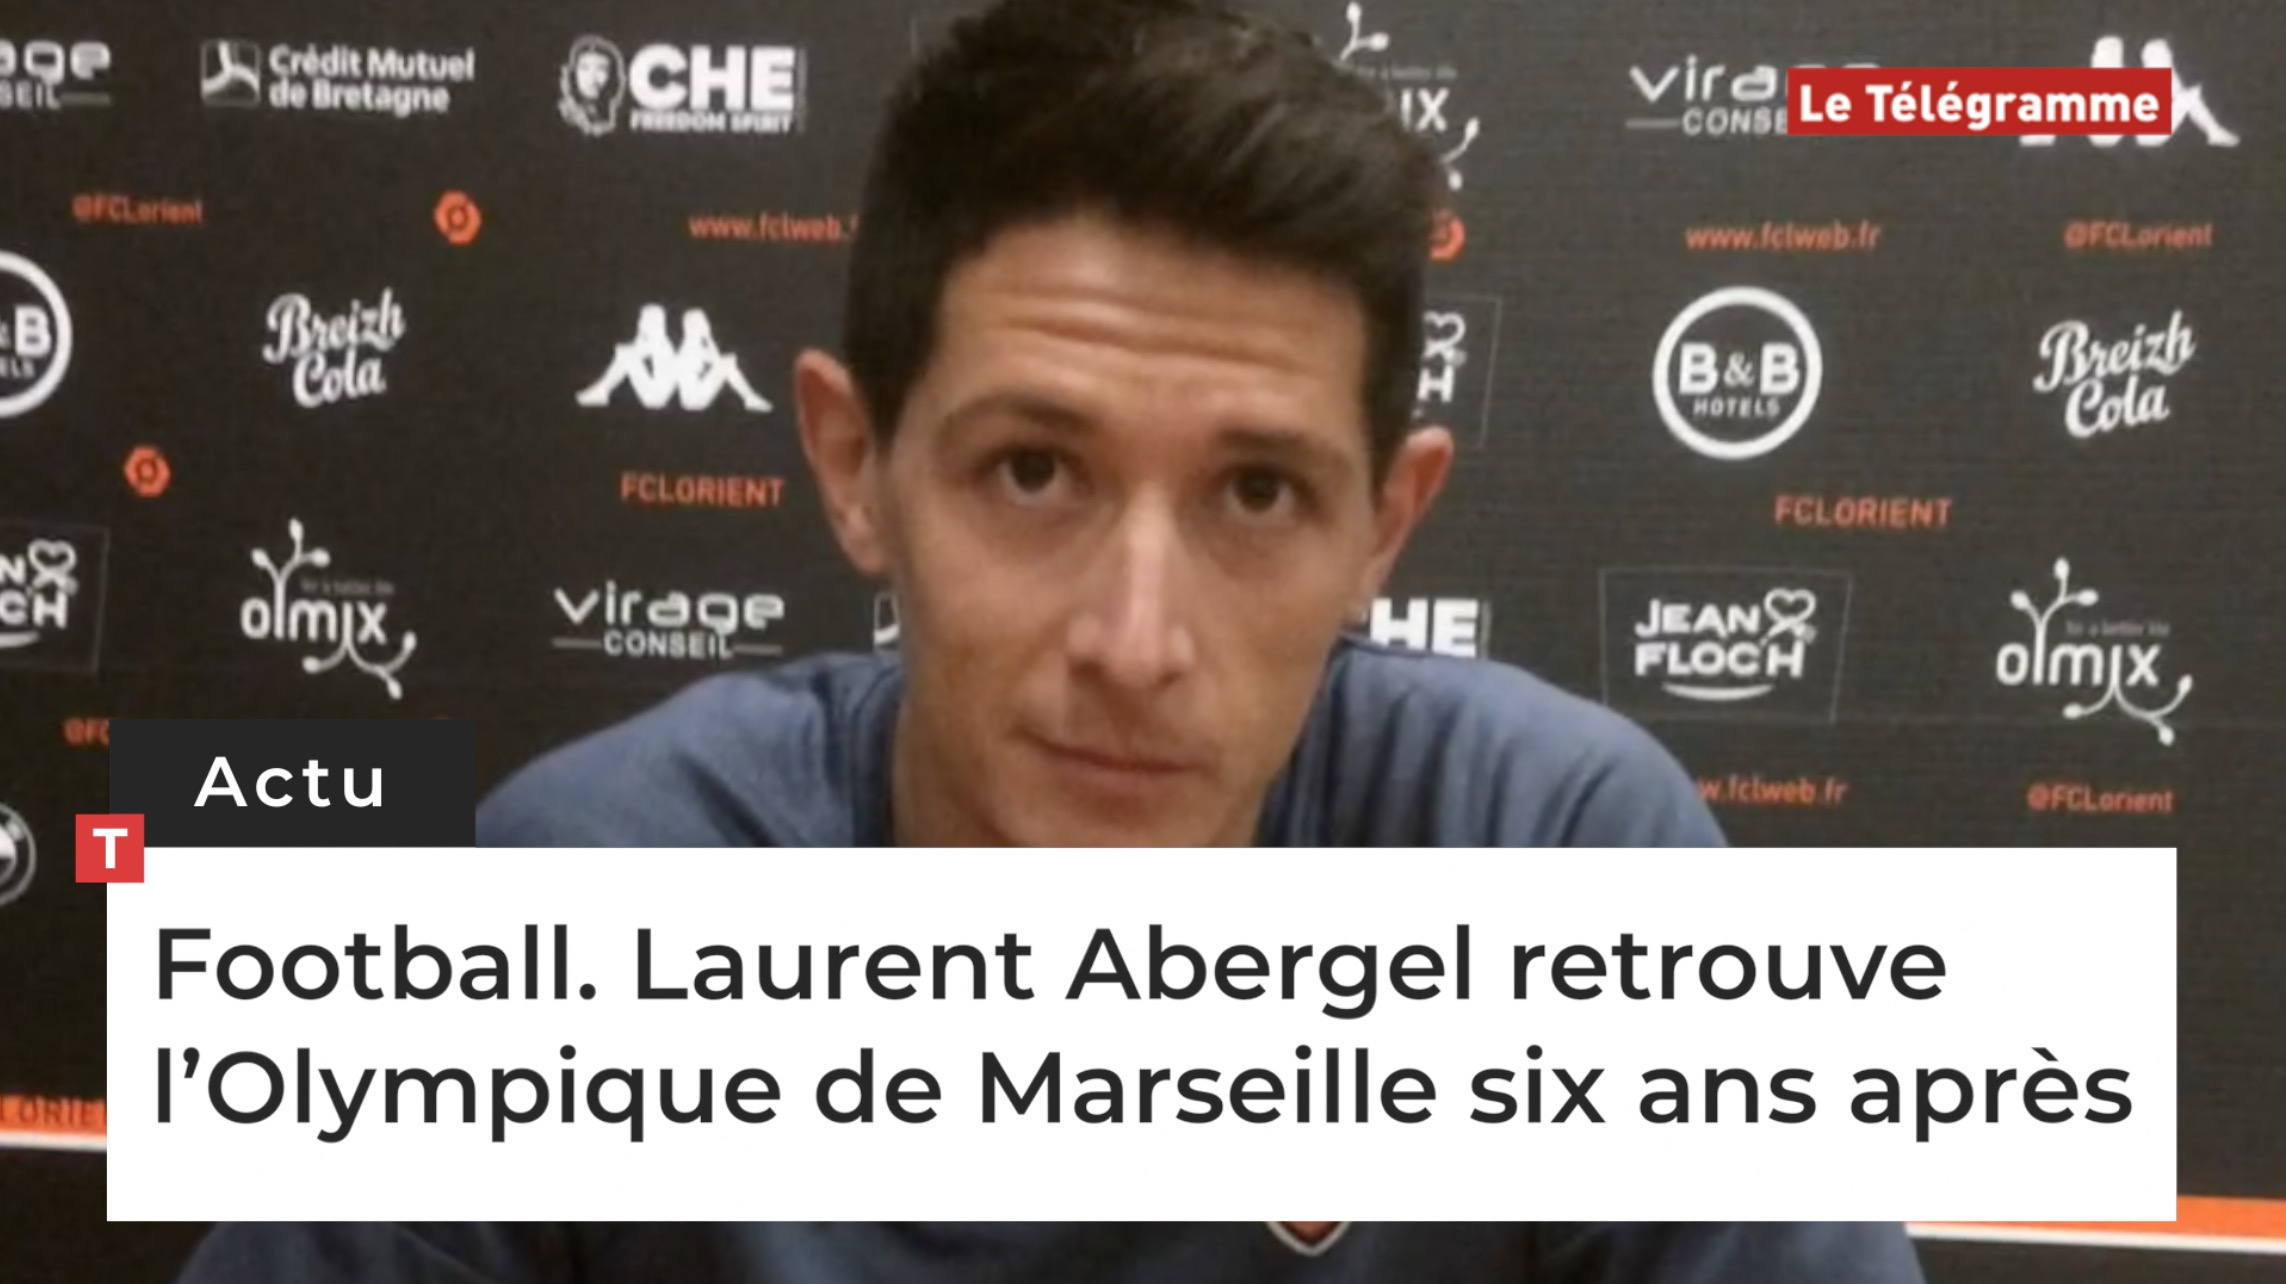 Football. Laurent Abergel retrouve l’Olympique de Marseille six ans après (Le Télégramme)